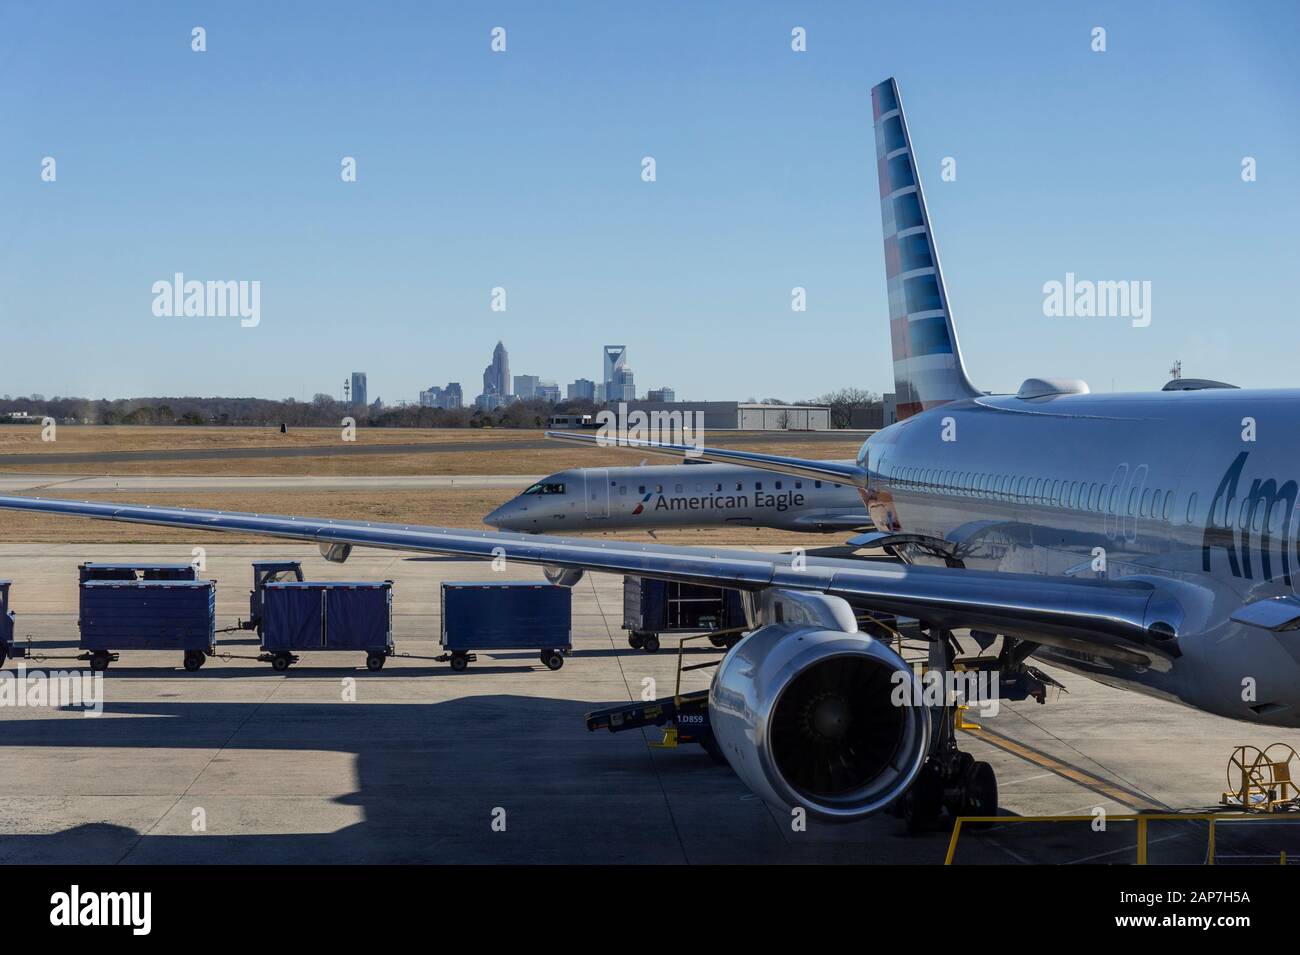 Airplanes at airport, Charlotte, North Carolina USA Stock Photo